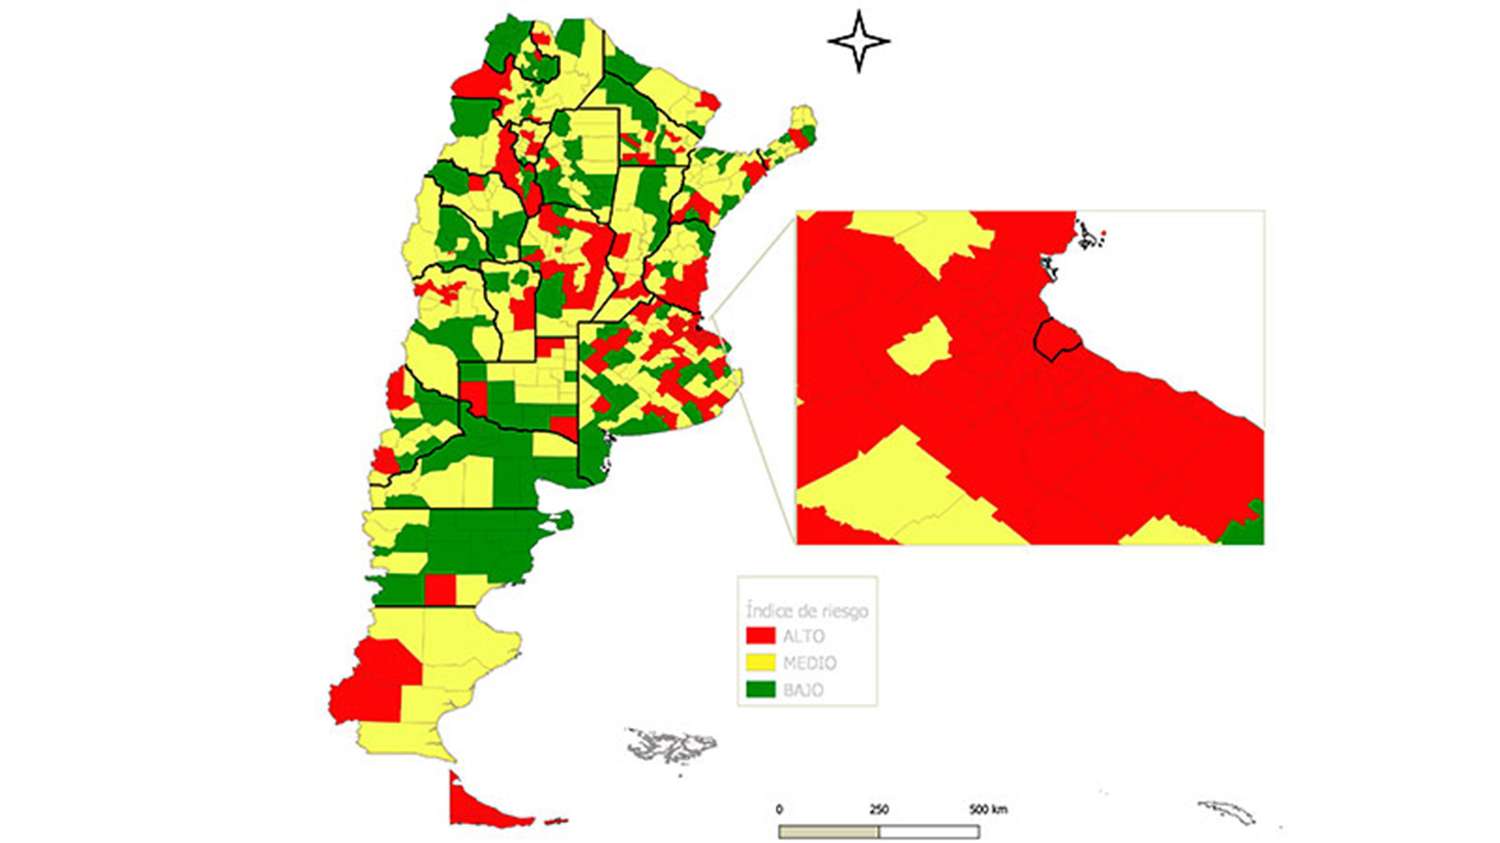 Riesgo epidemiológico: la cantidad de departamentos "en rojo" de cada provincia